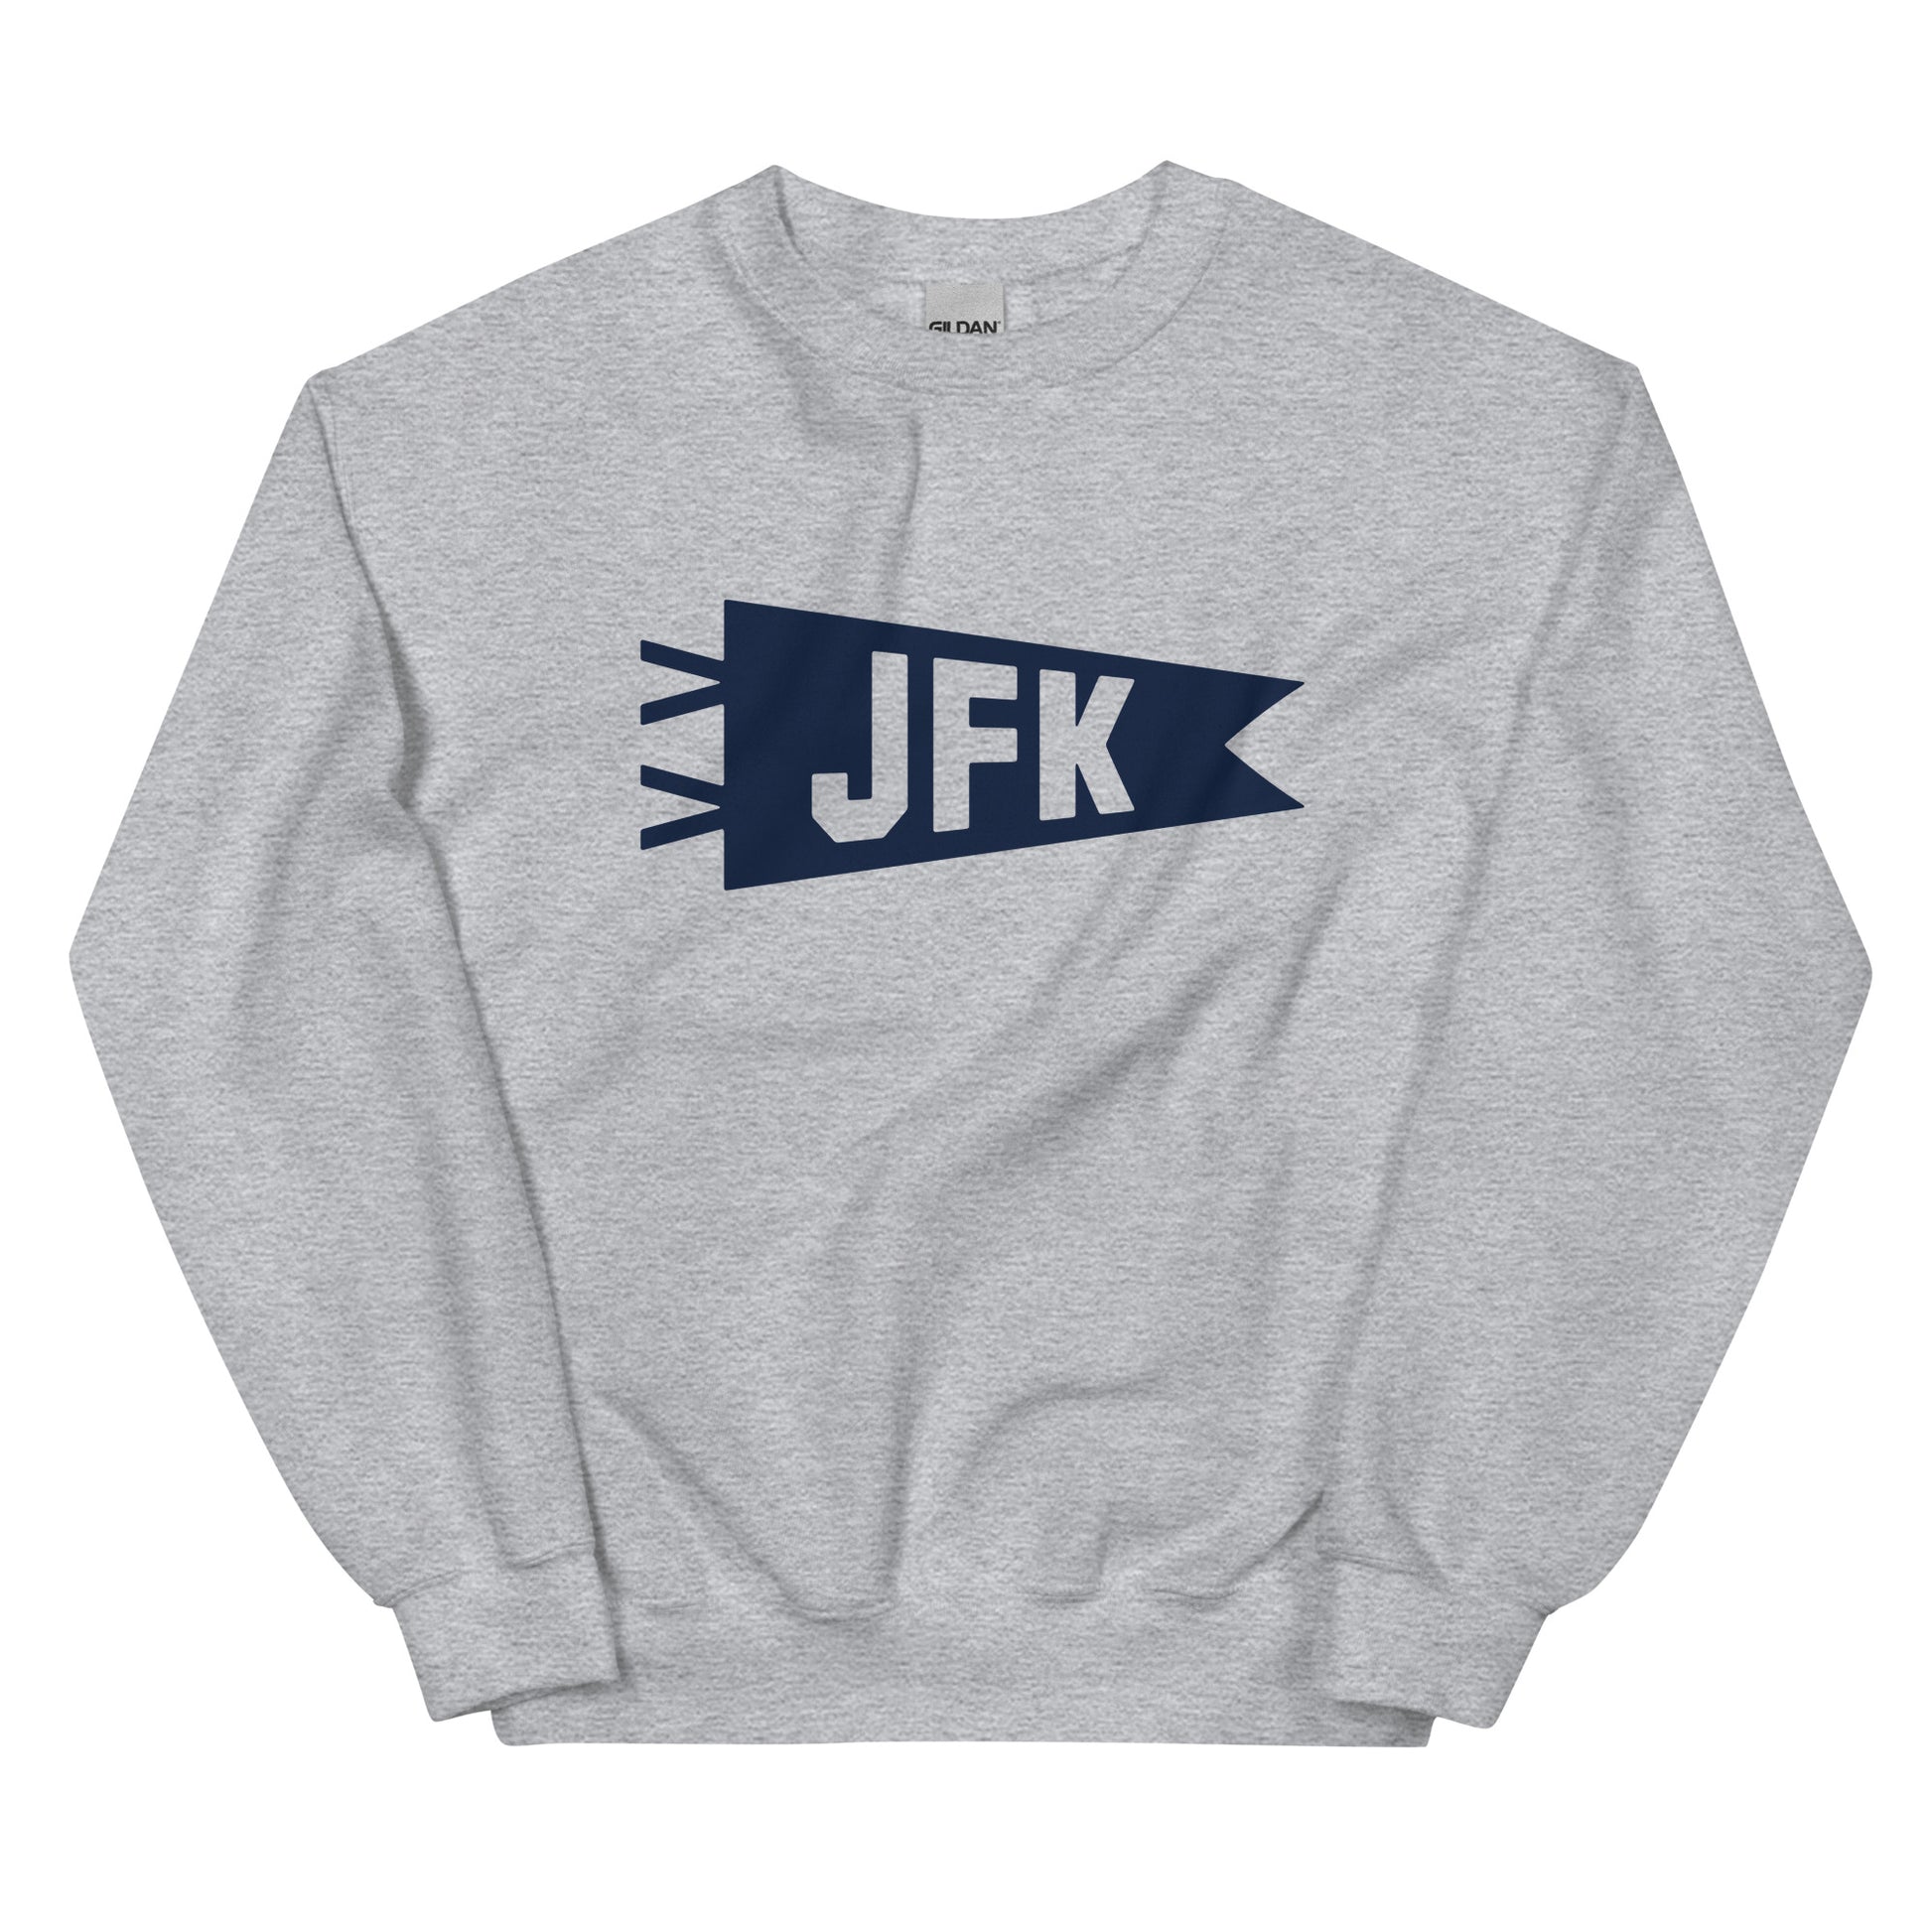 Airport Code Sweatshirt - Navy Blue Graphic • JFK New York City • YHM Designs - Image 02